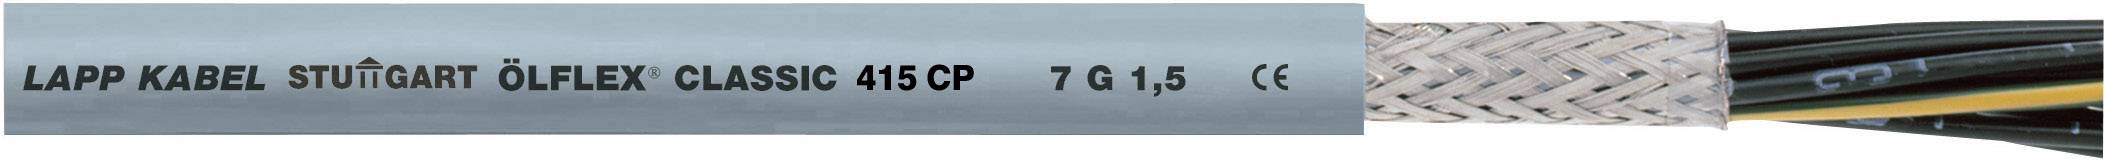 LAPP ÖLFLEX 415 CP Steuerleitung 4 G 0.75 mm² Grau 1314020-1000 1000 m